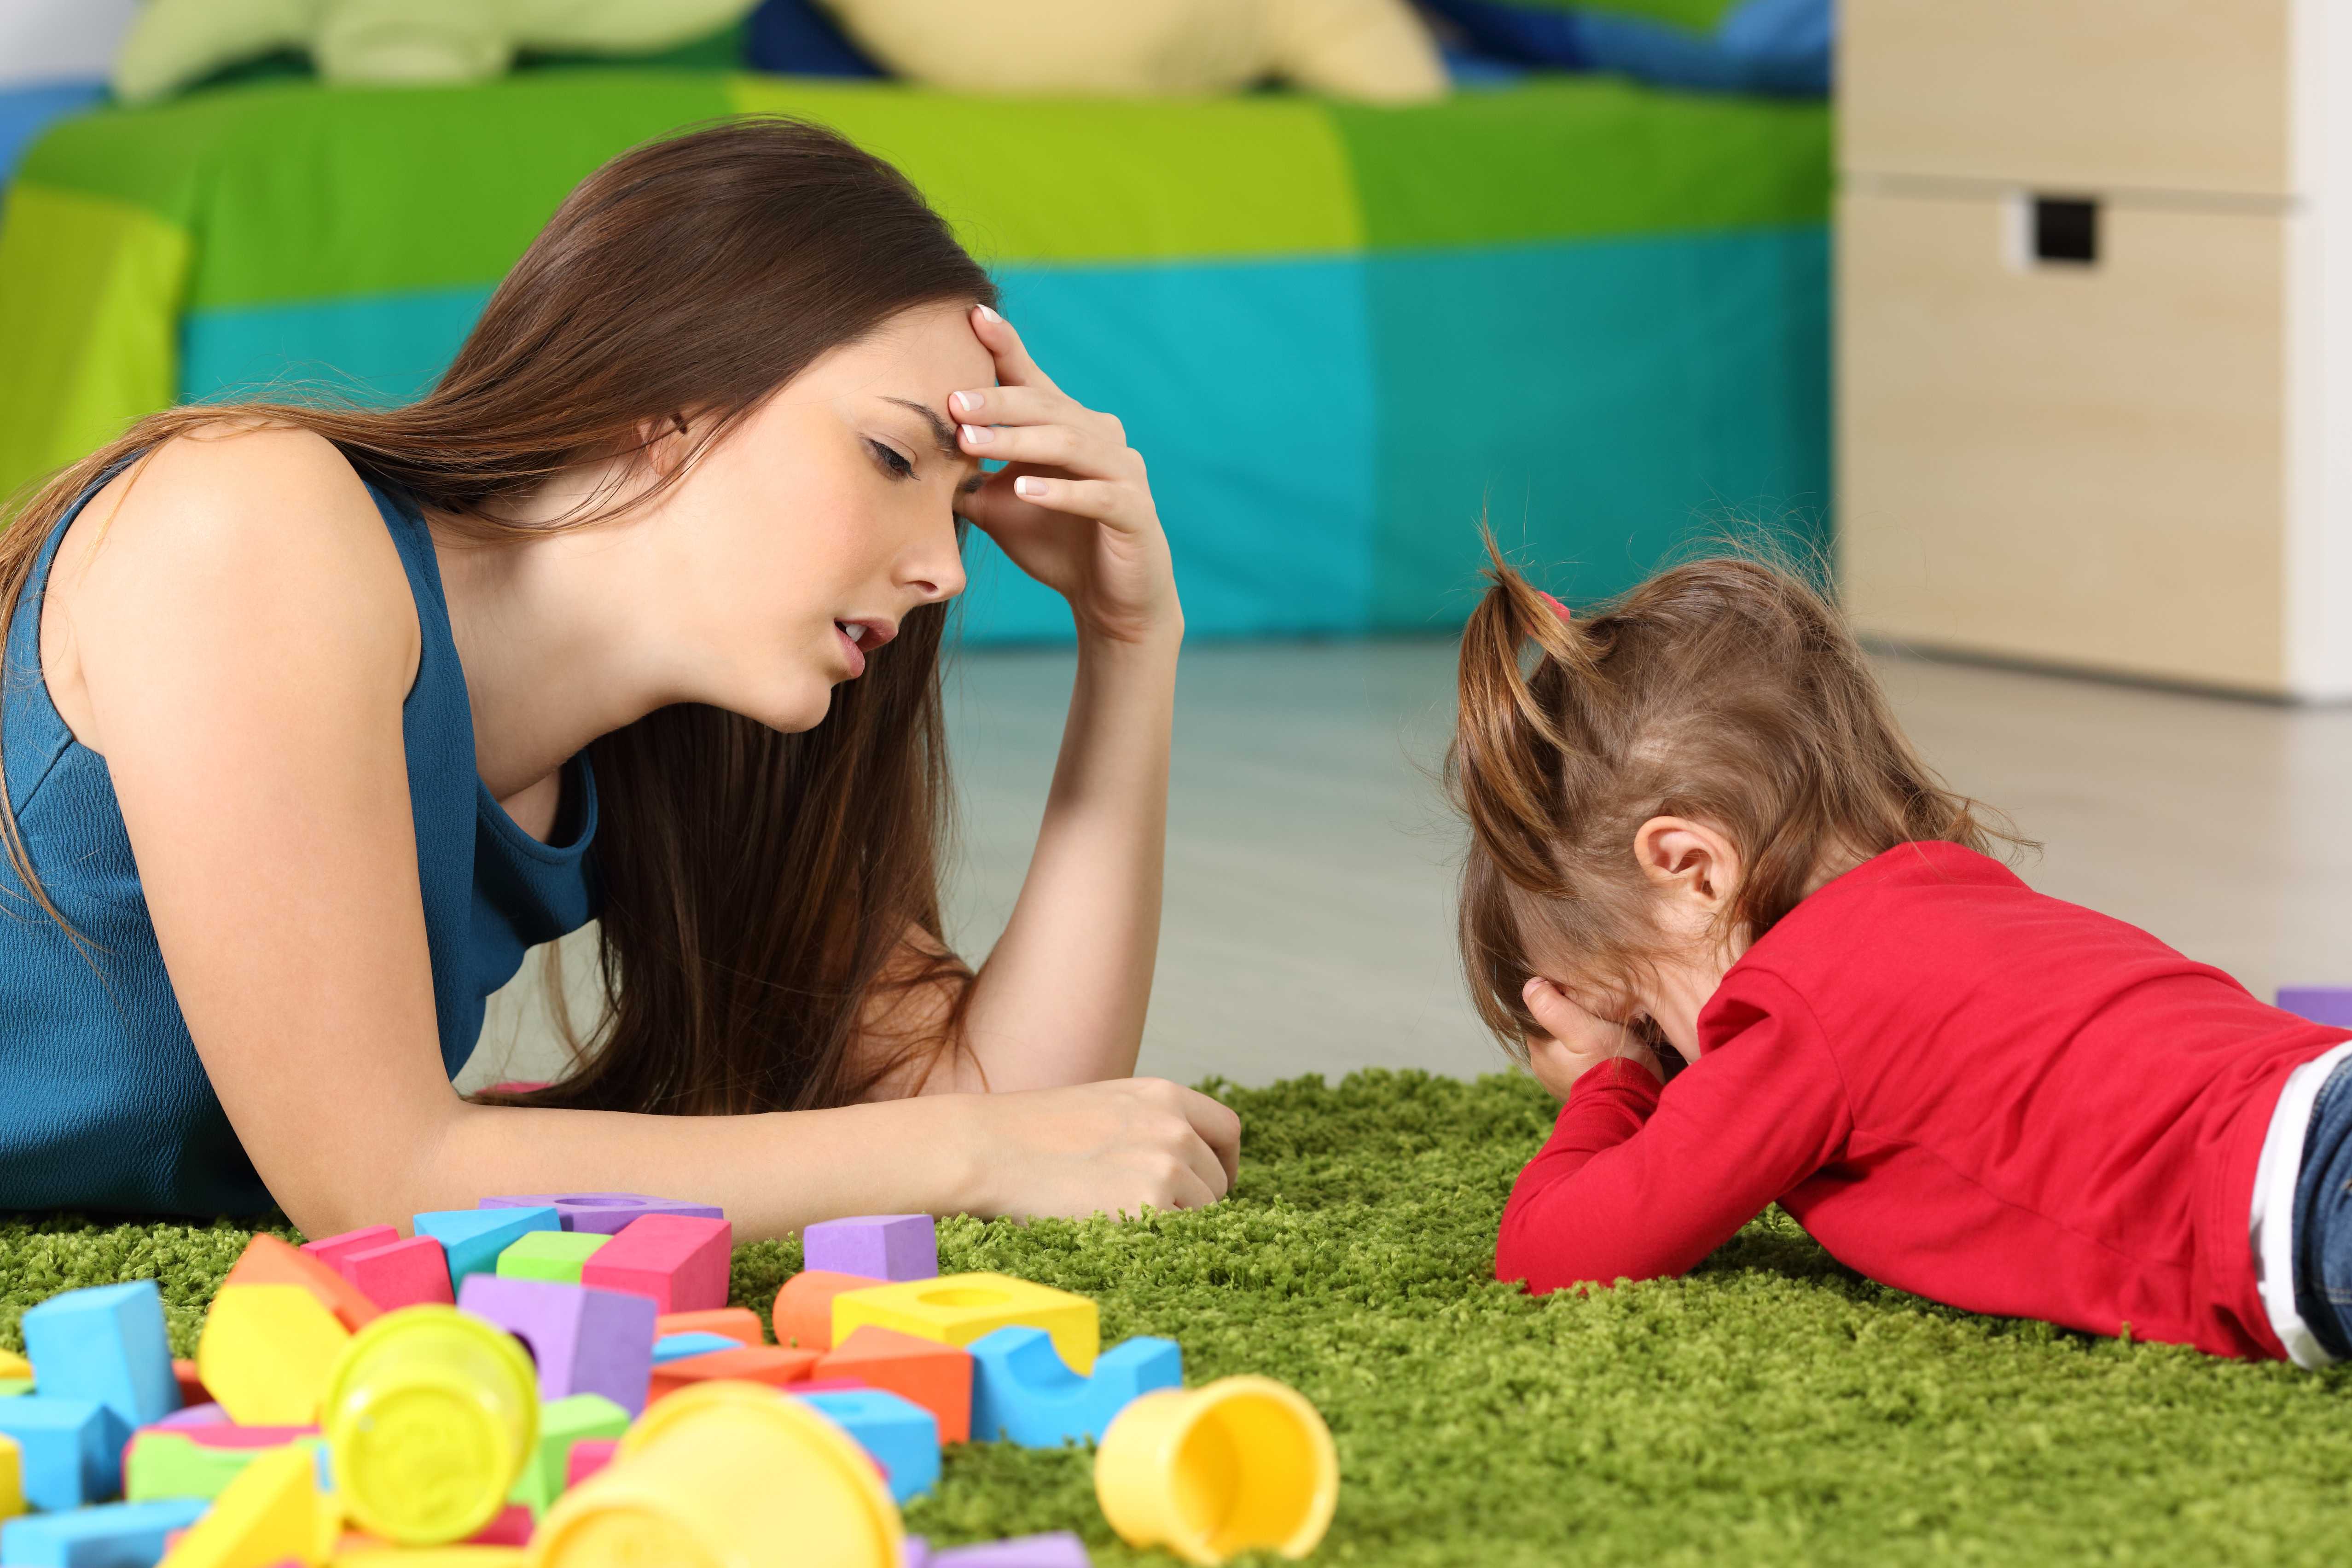 5 причин не послушания ребенка в 4 года – что делать родителям?